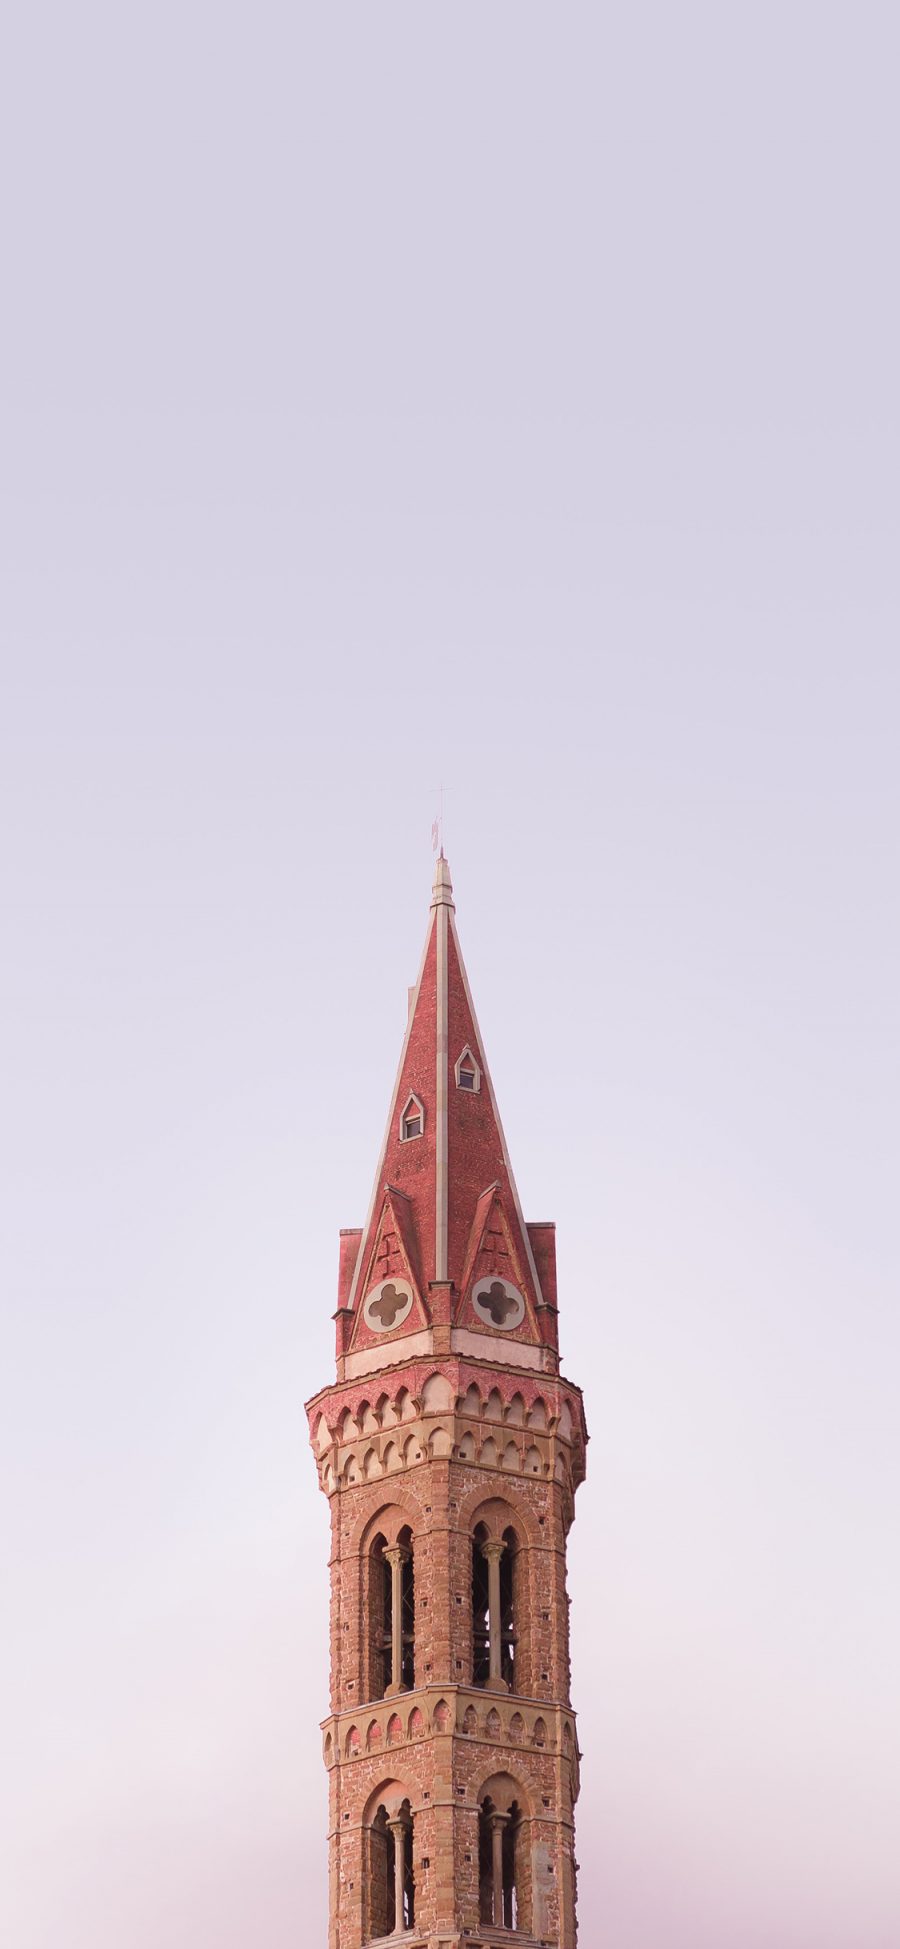 [2436×1125]建筑 教堂 高楼 尖塔 苹果手机壁纸图片